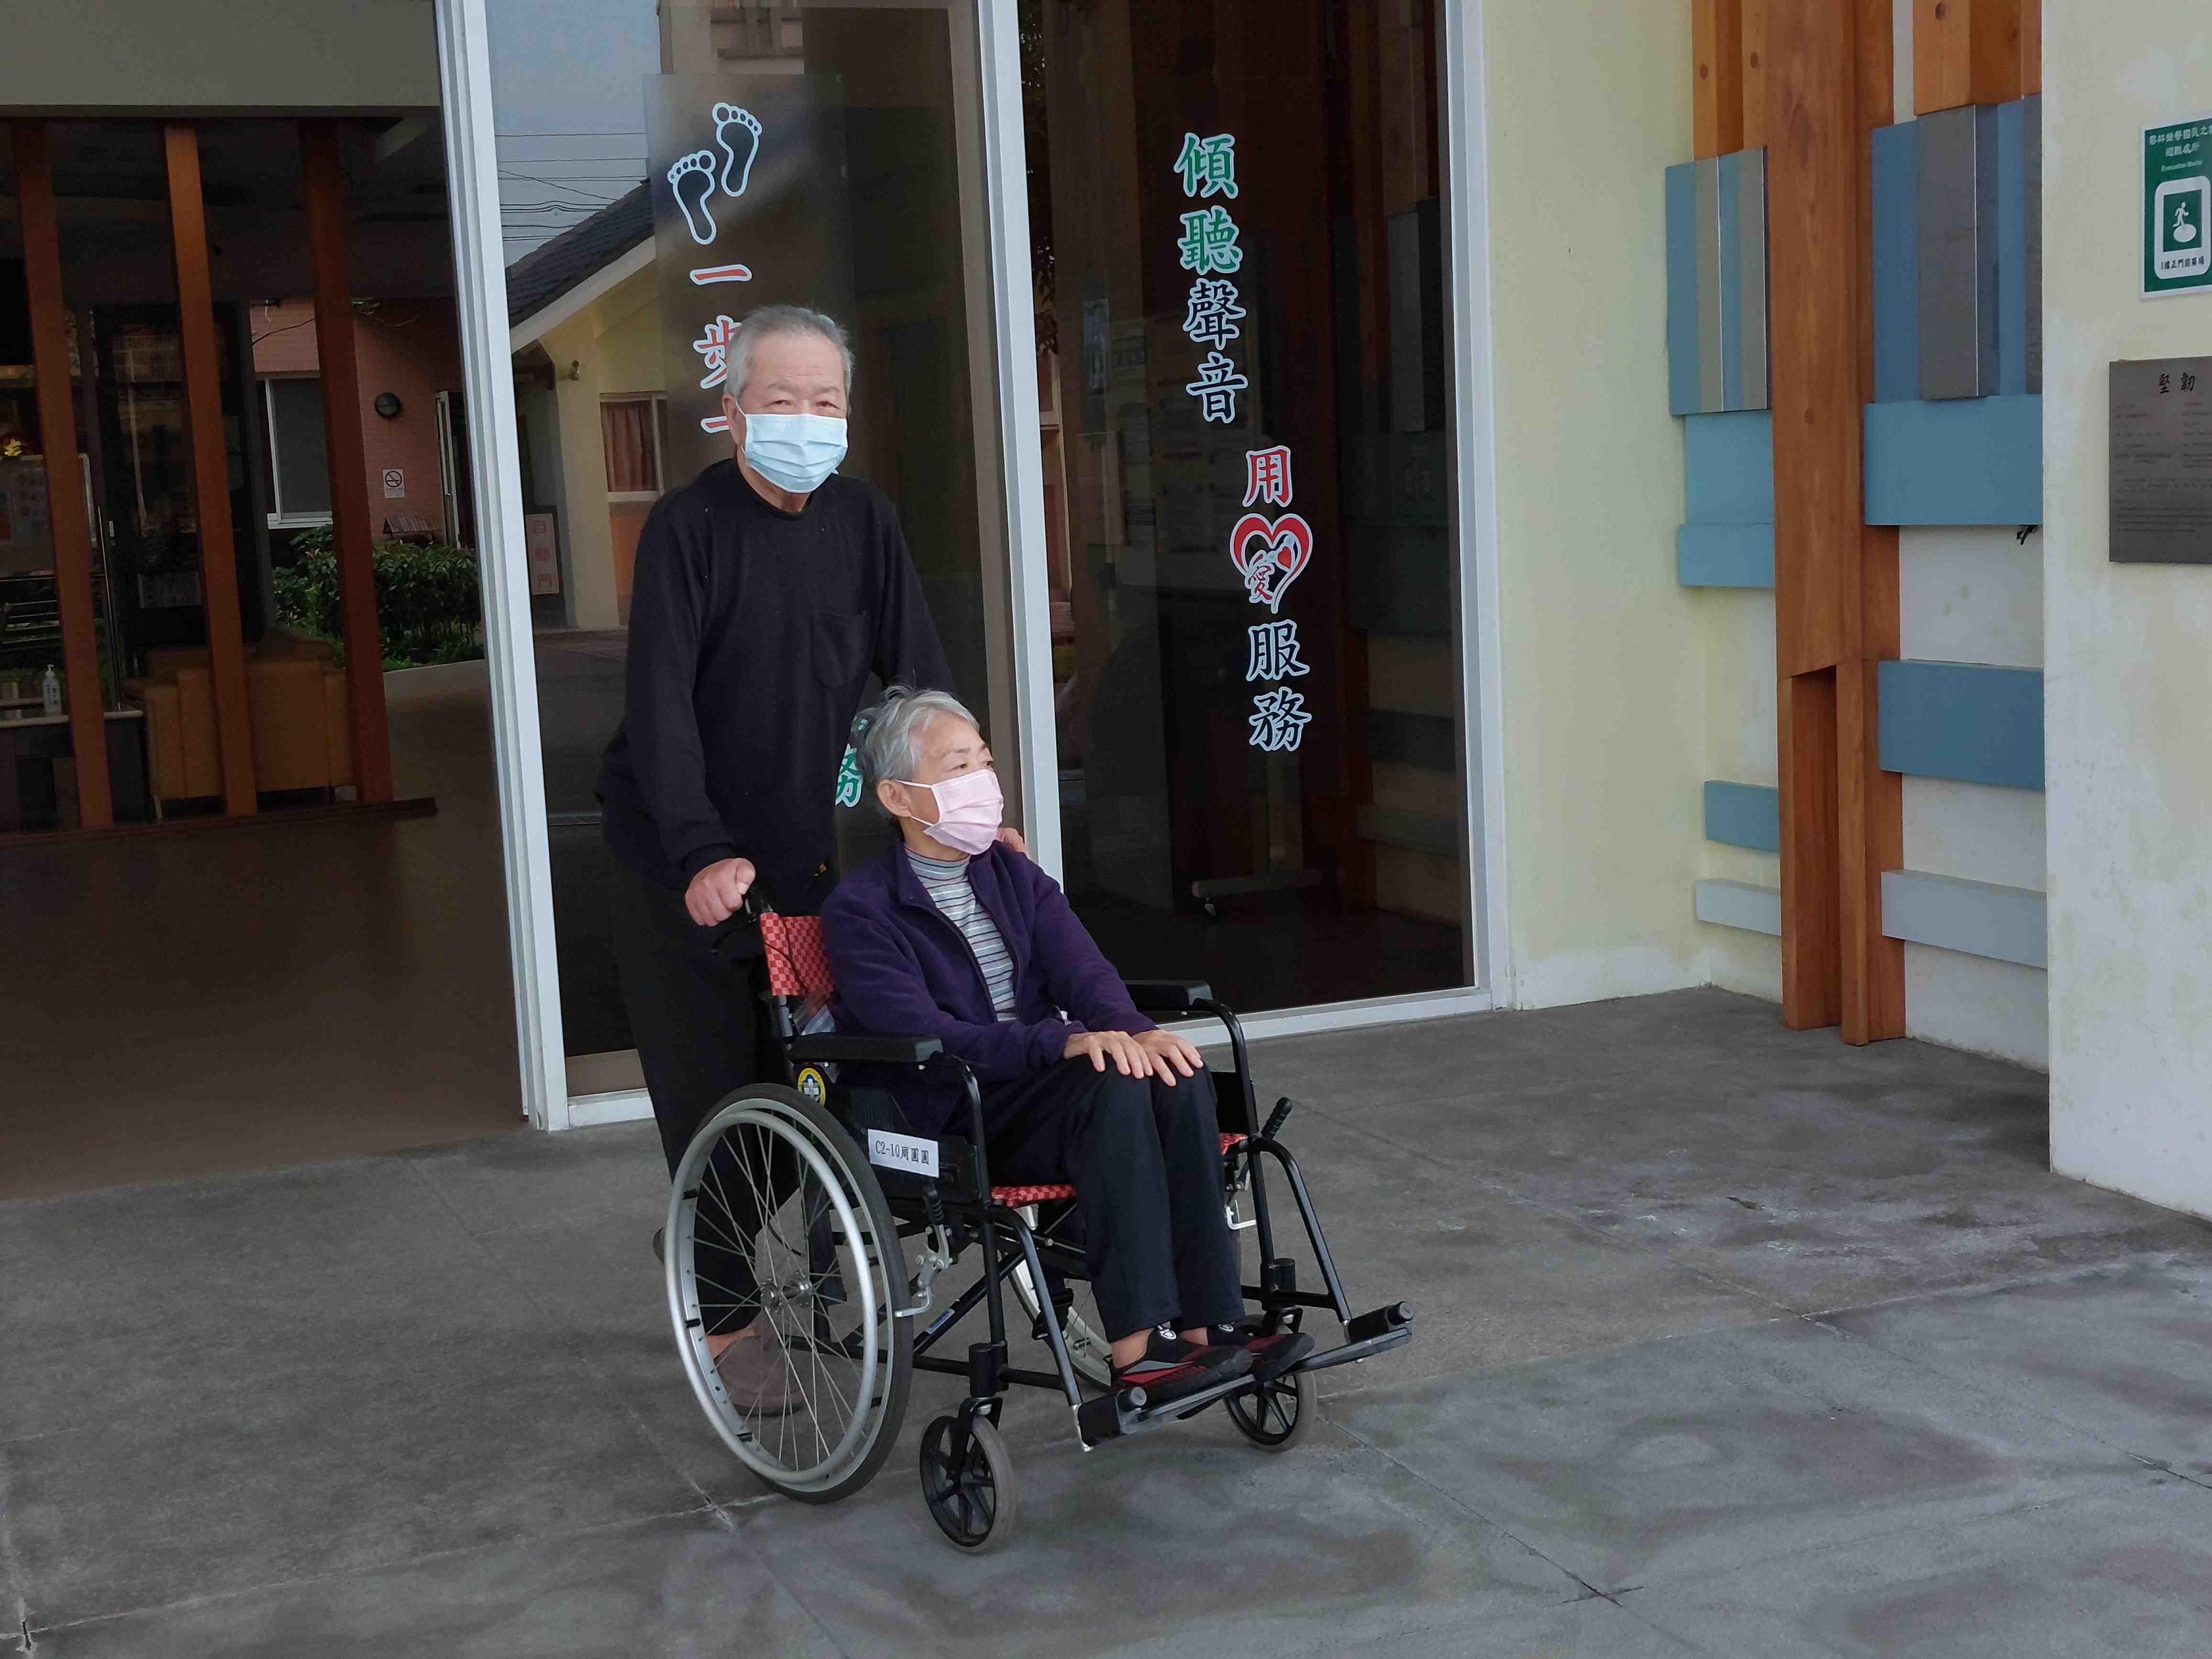 夫妻檔住民由夫推著妻坐輪椅參加健走活動